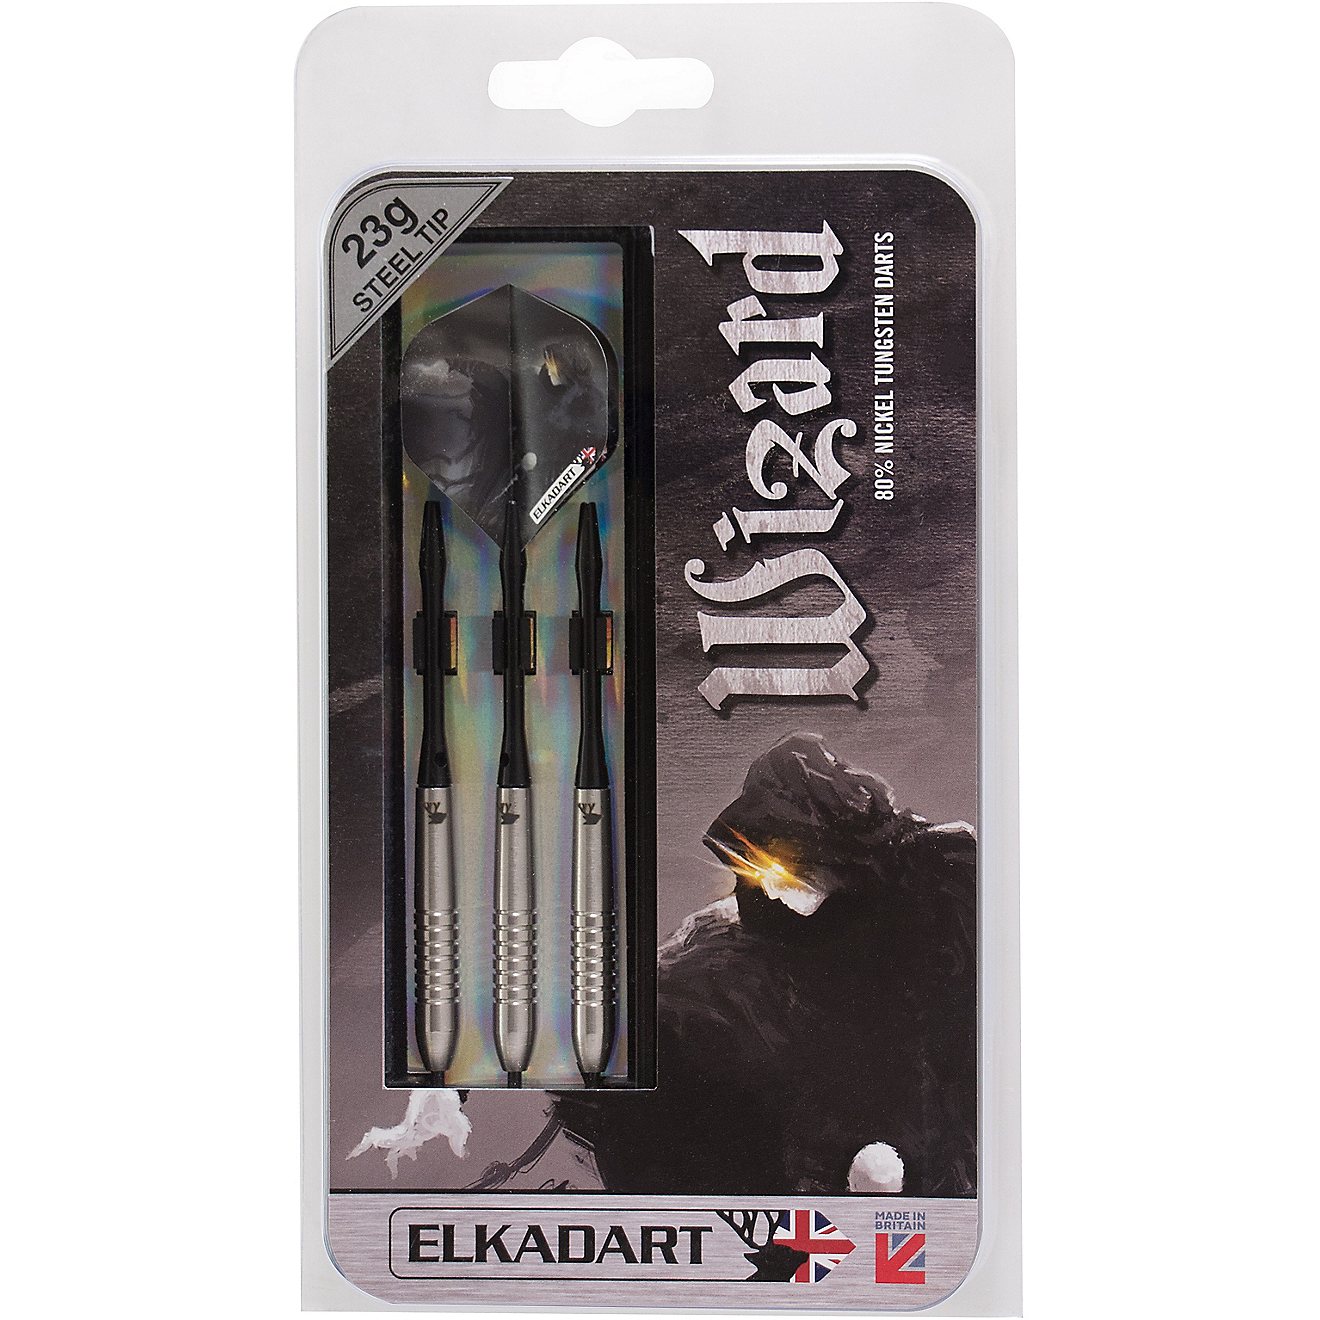 Elkadart Wizard 23 g Tungsten Steel-Tip Darts 3-Pack                                                                             - view number 4